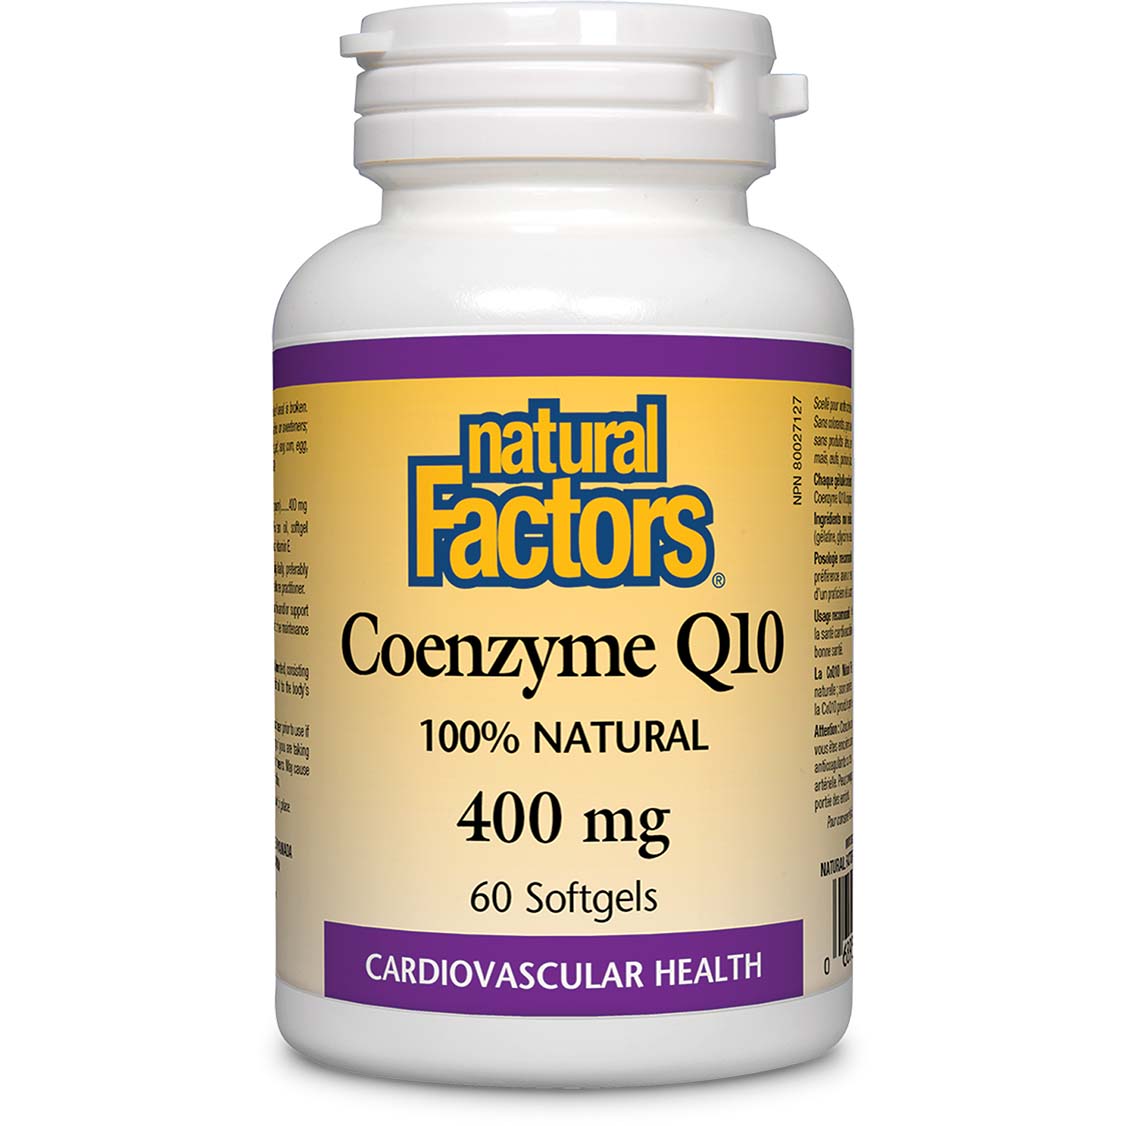 Natural Factors Coenzyme Q10 60 Softgels 400 mg